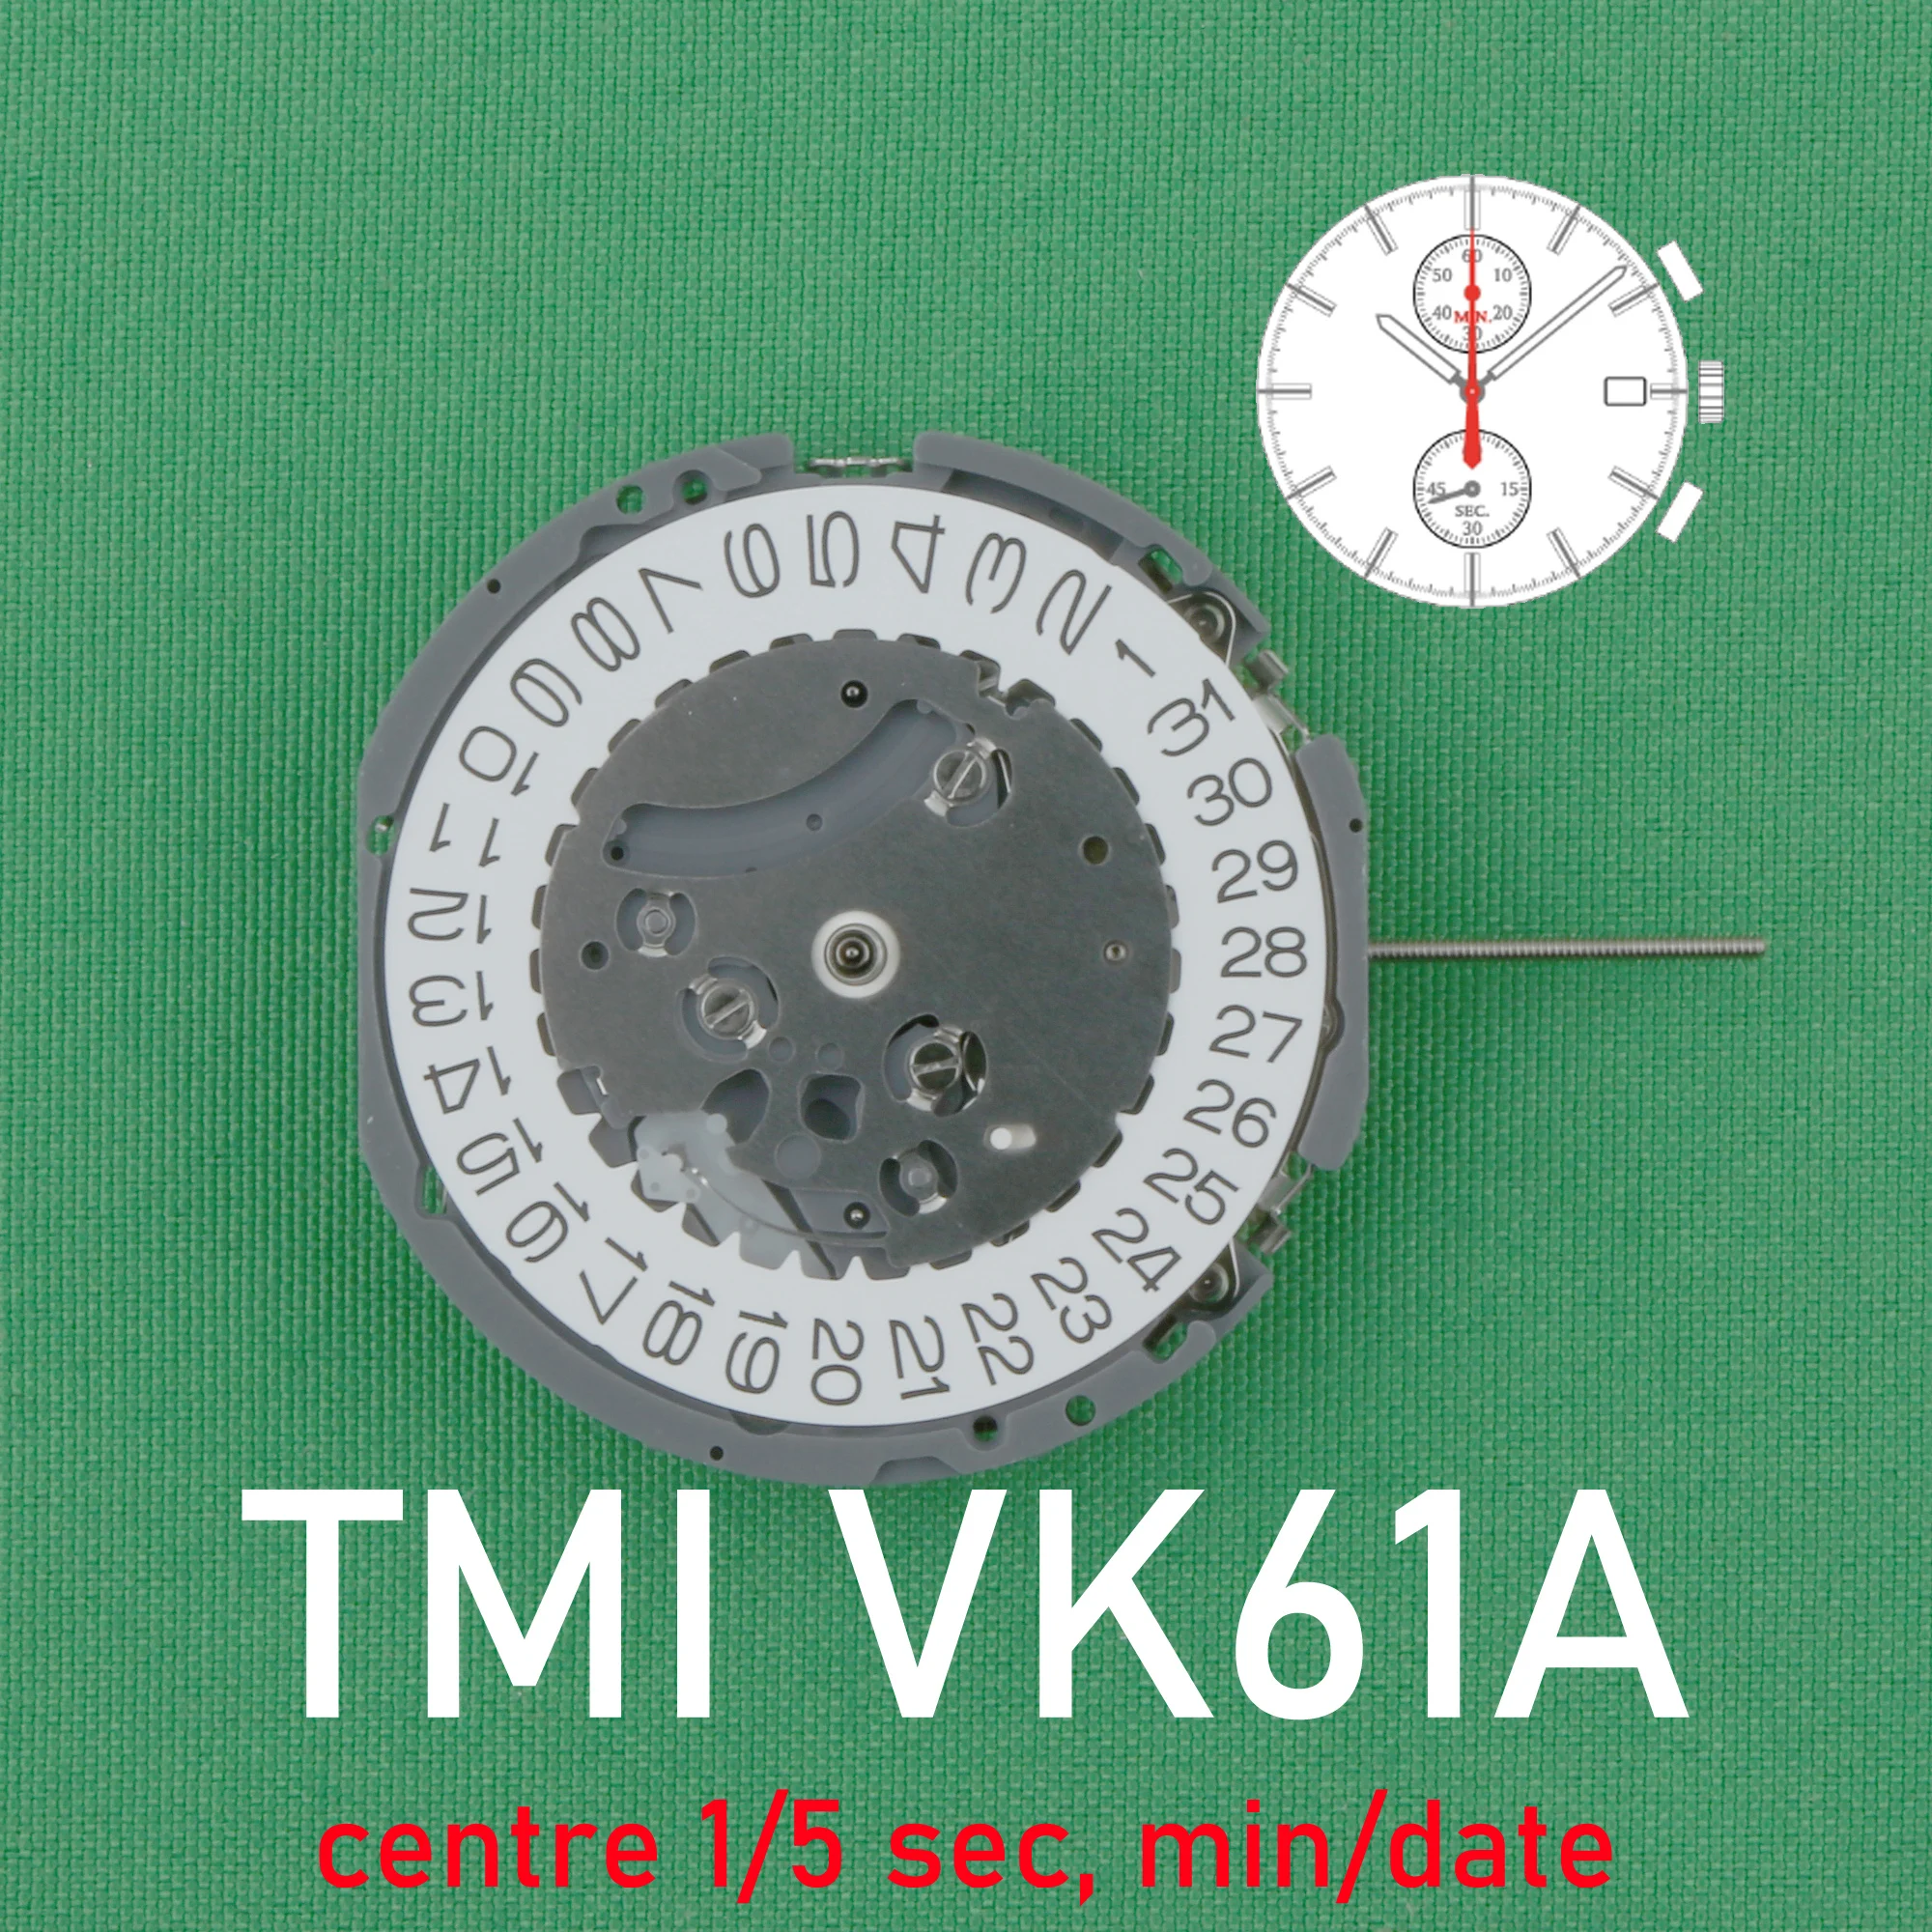 

Часы наручные VK61 Seiko Vk61a, японский механизм, кварцевый механизм, оригинальные часы SII/TMI Vk61, Часовые аксессуары, дата на 3